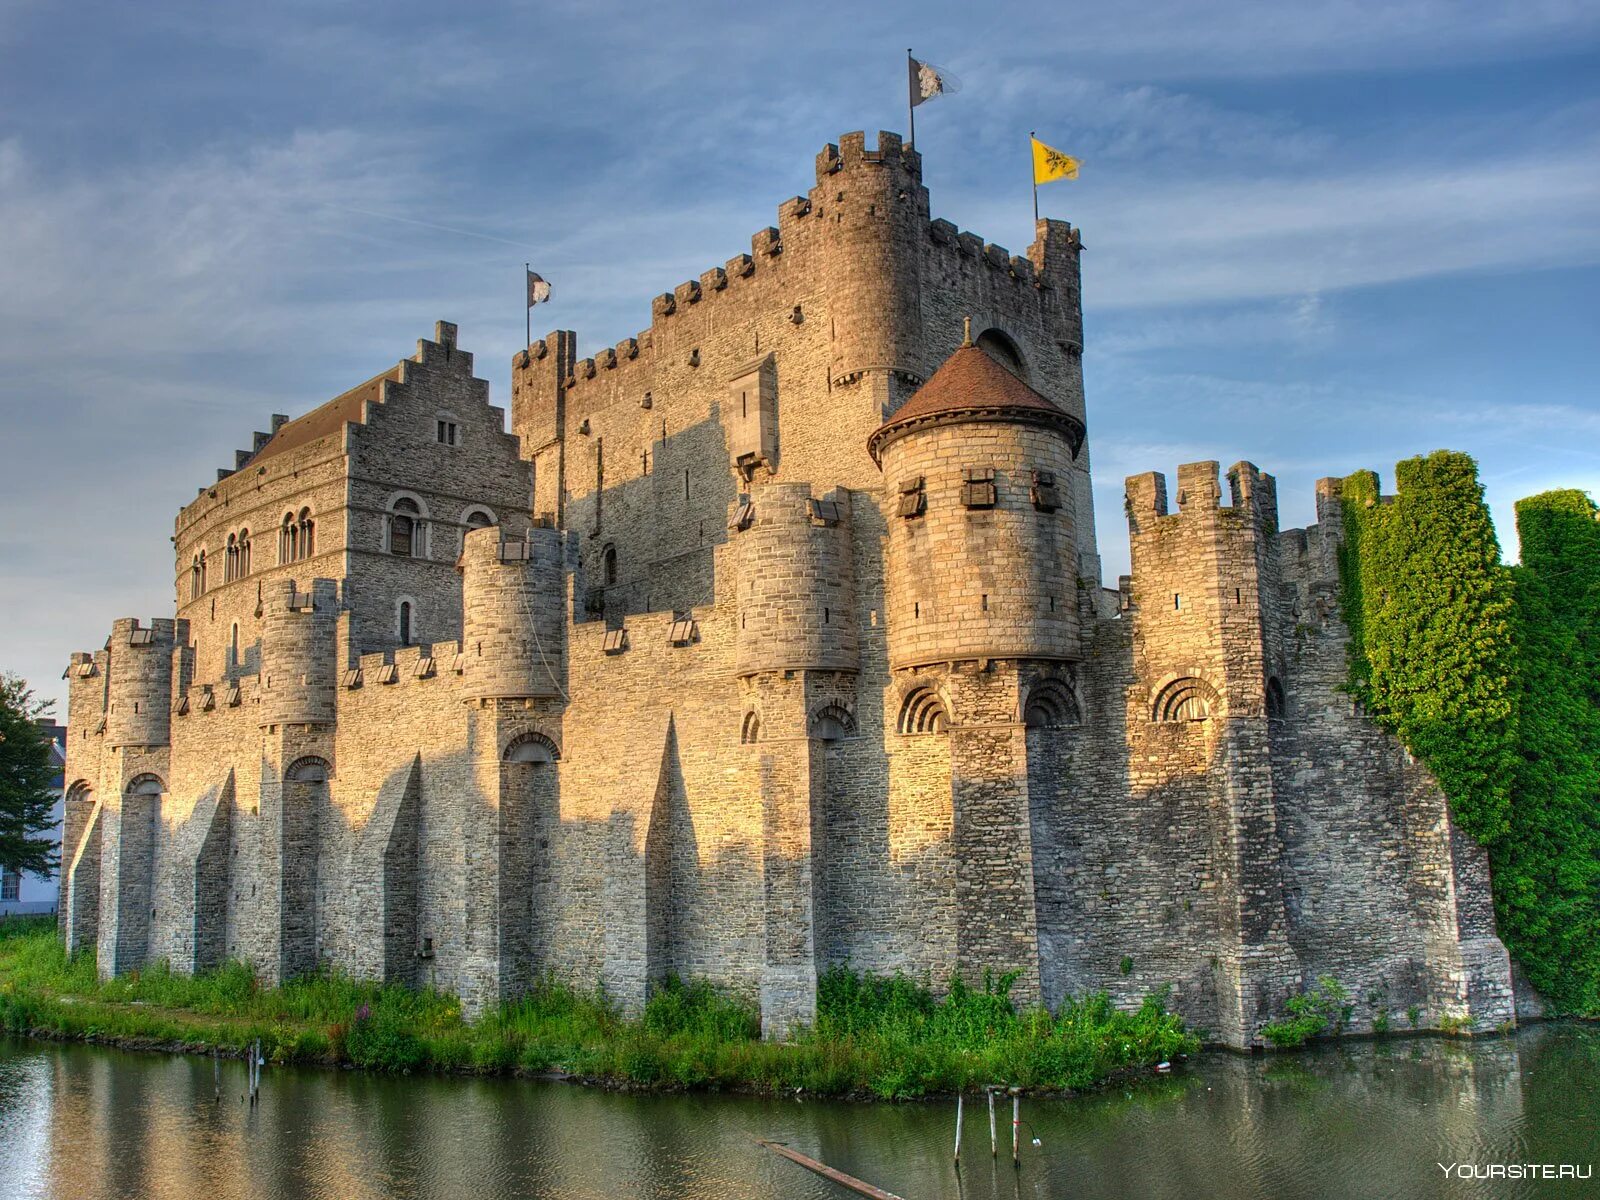 Известный средневековый замок. Замок графов Фландрии Гент. Бельгия Гравенстен в Генте. Замок Гравенстеен в Бельгии. Графский замок в Генте.